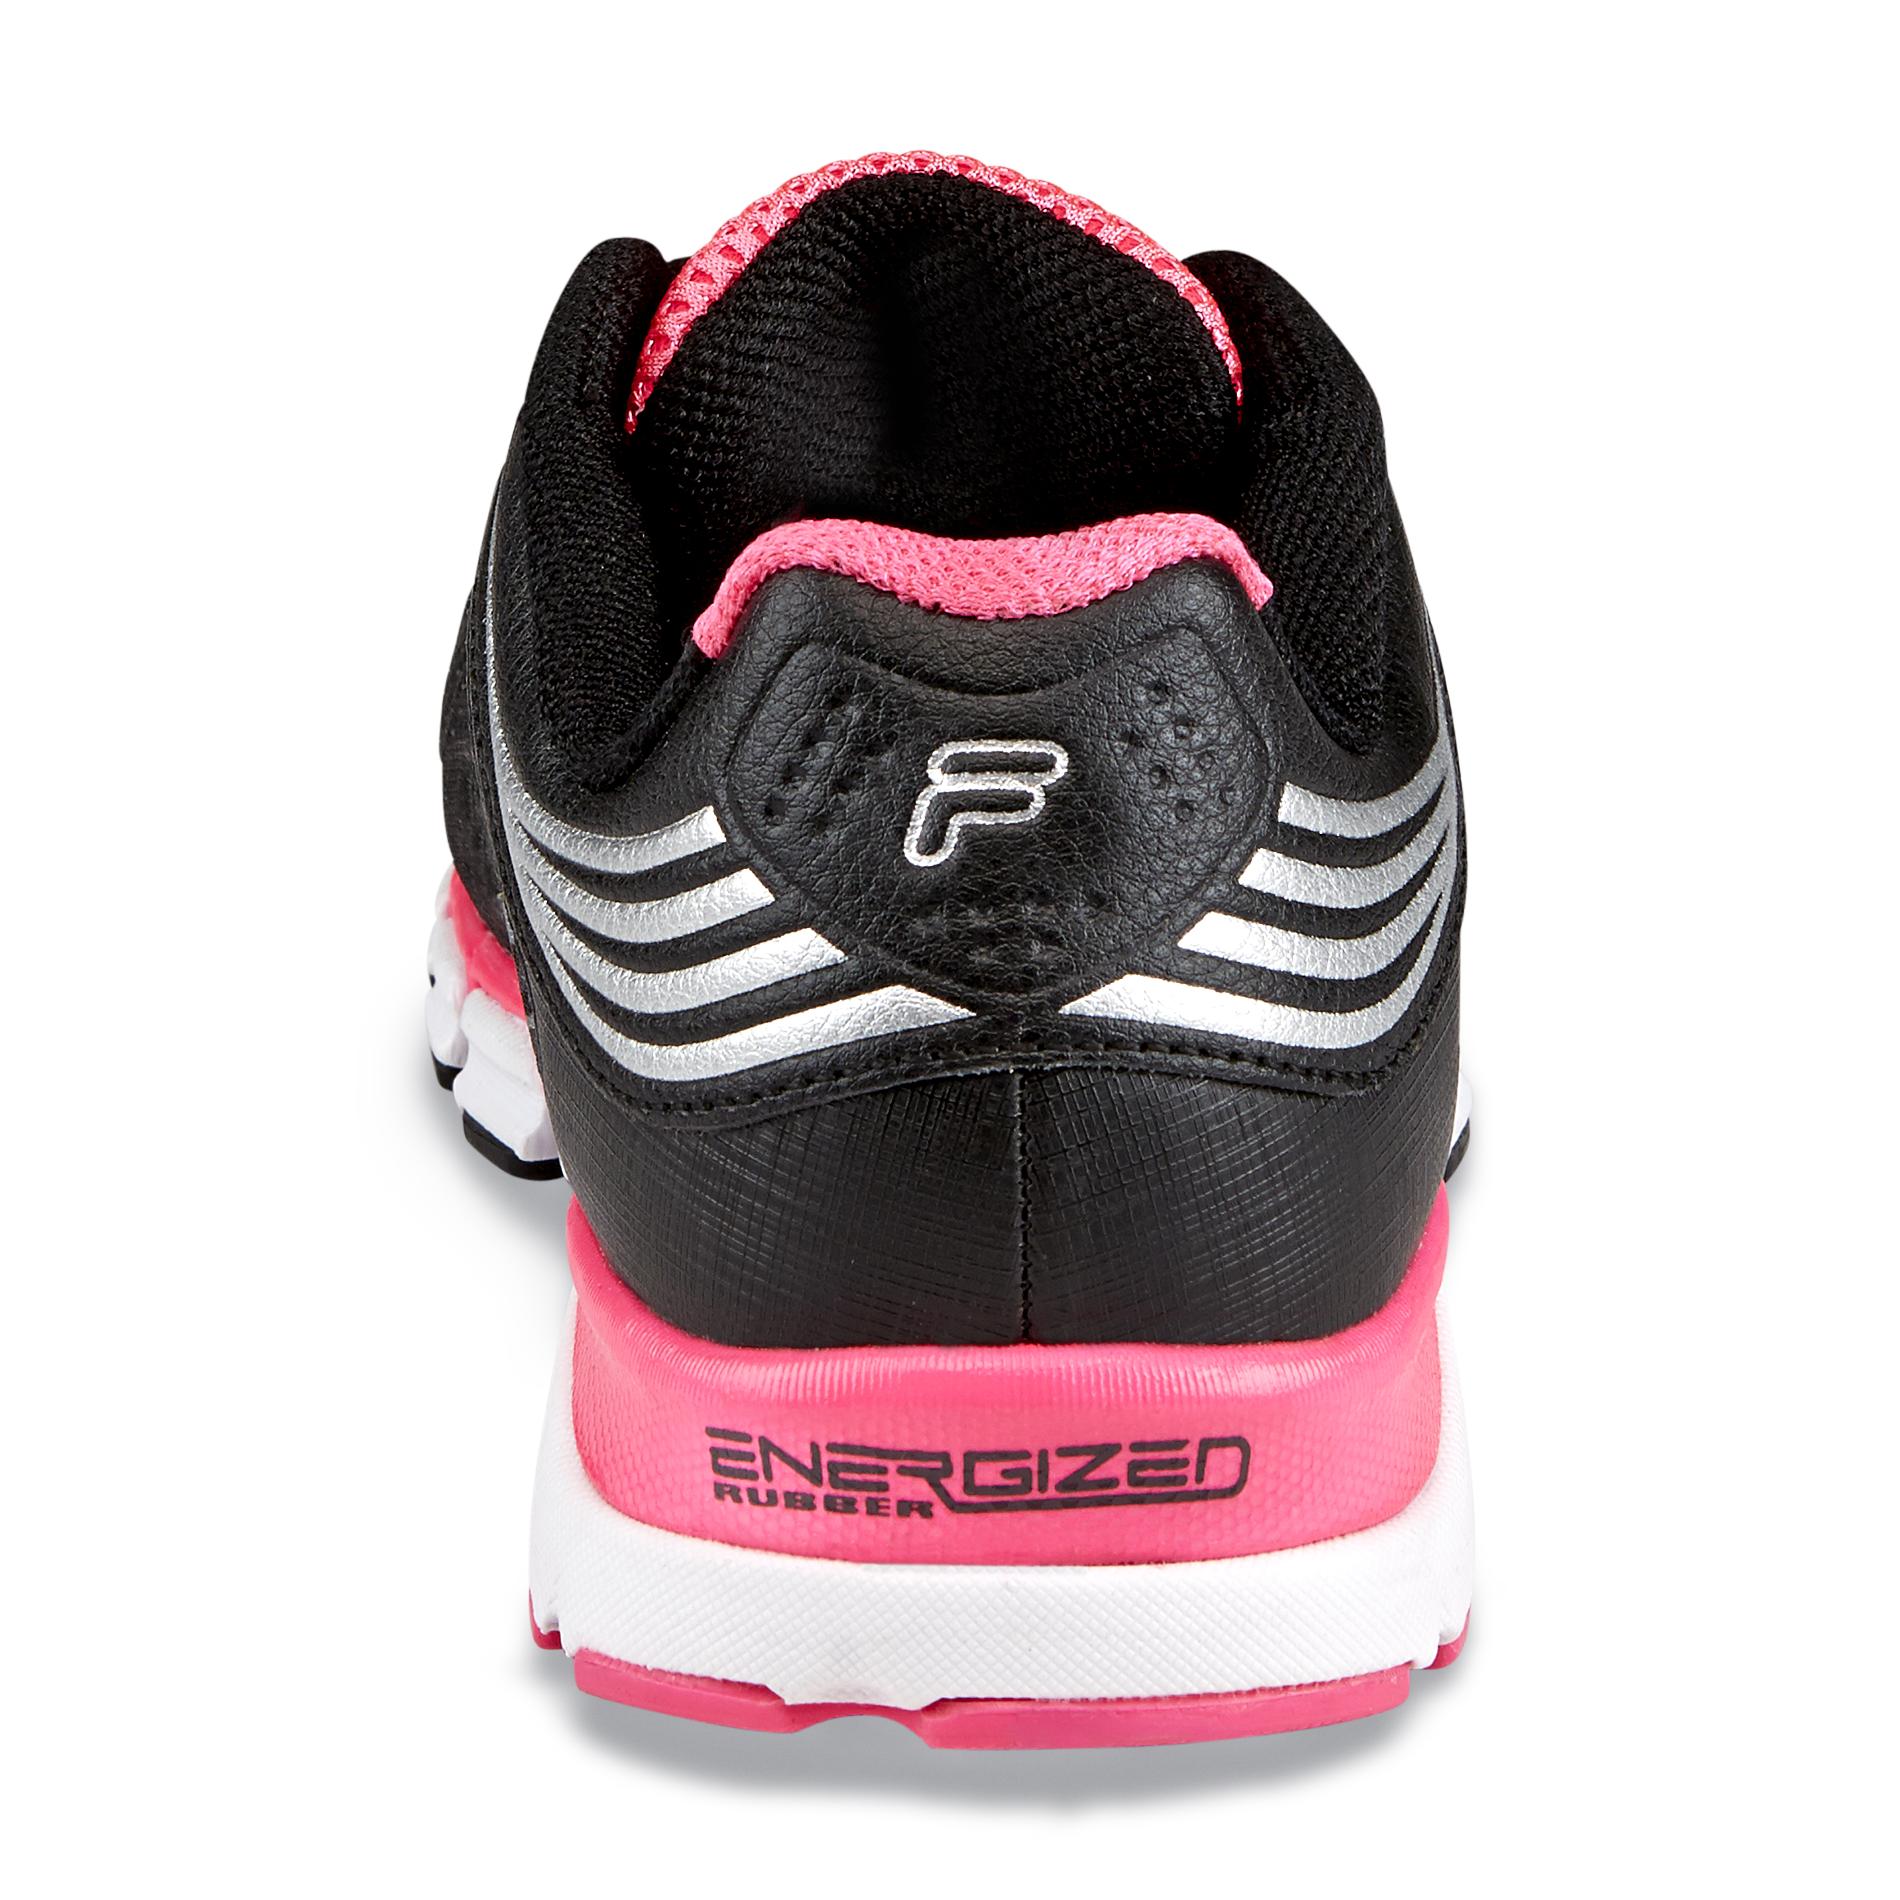 Fila Women's Turbo Fuel 2 Linear Energized Black/Pink/Silver Running Shoe